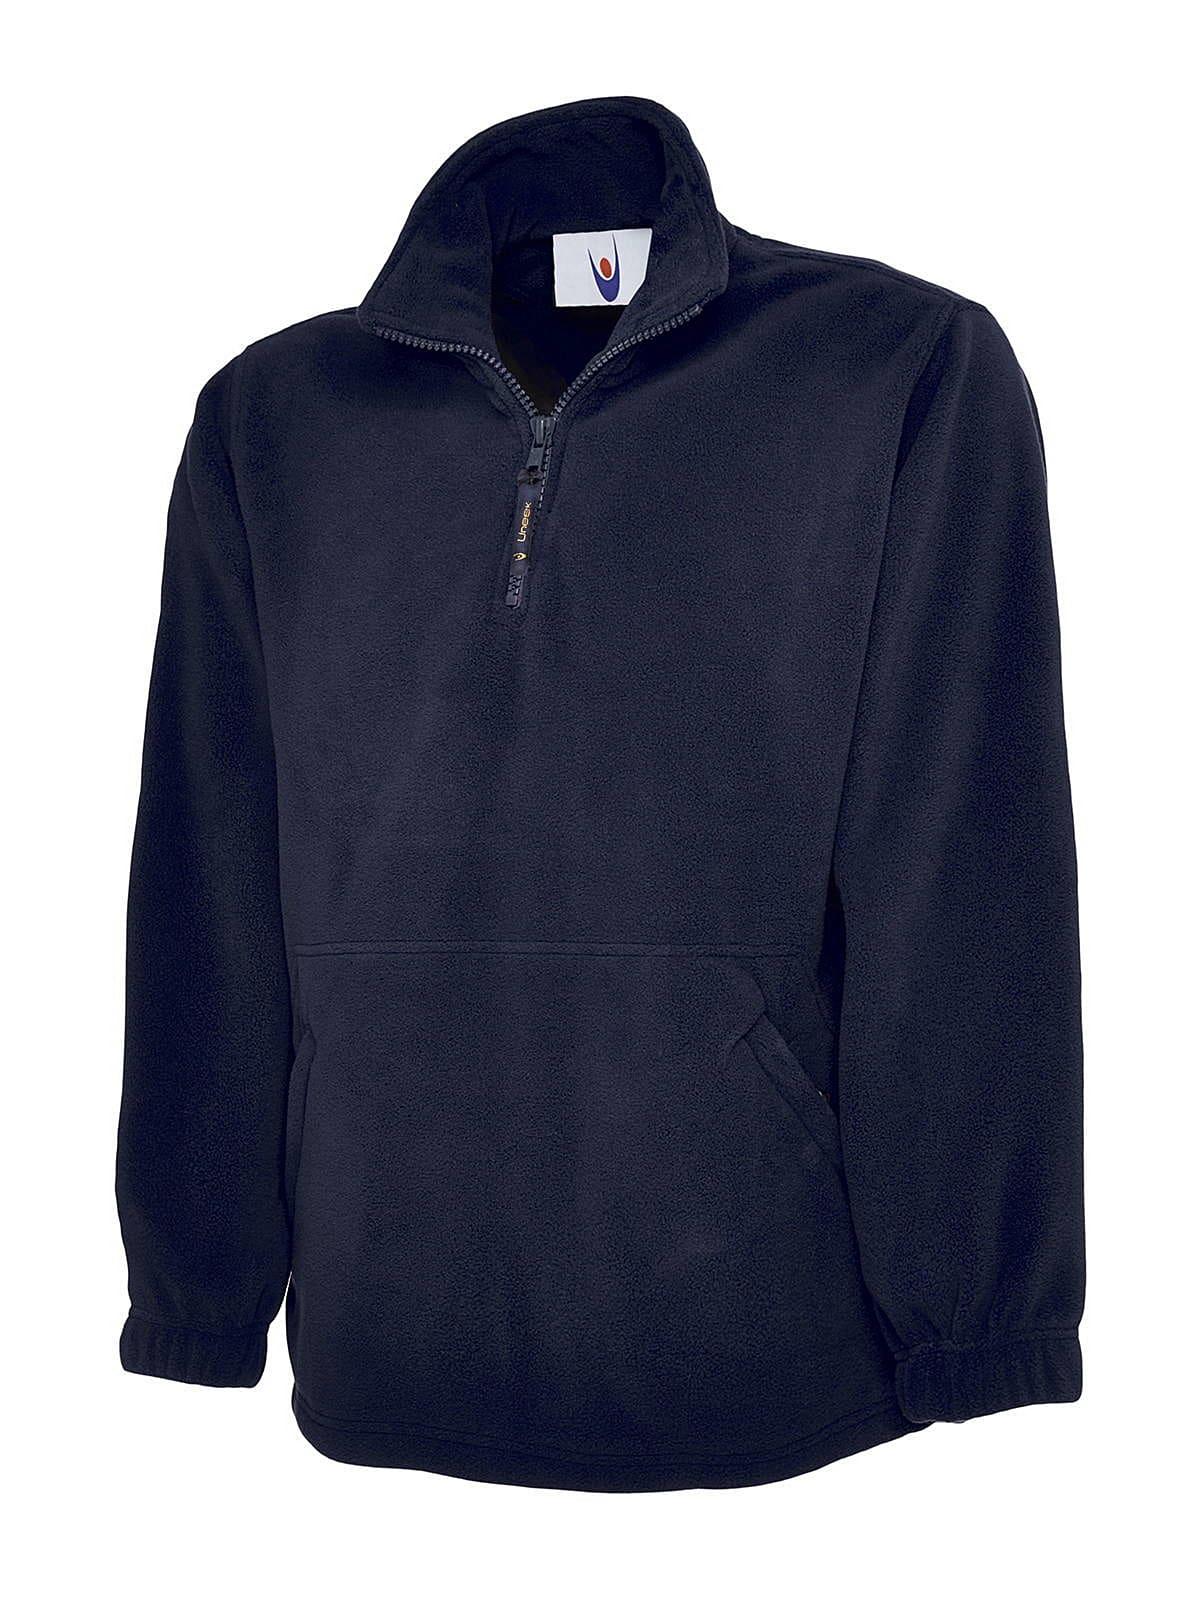 Uneek 380GSM Premium 1/4 Zip Micro Fleece Jacket | UC602 | Workwear ...